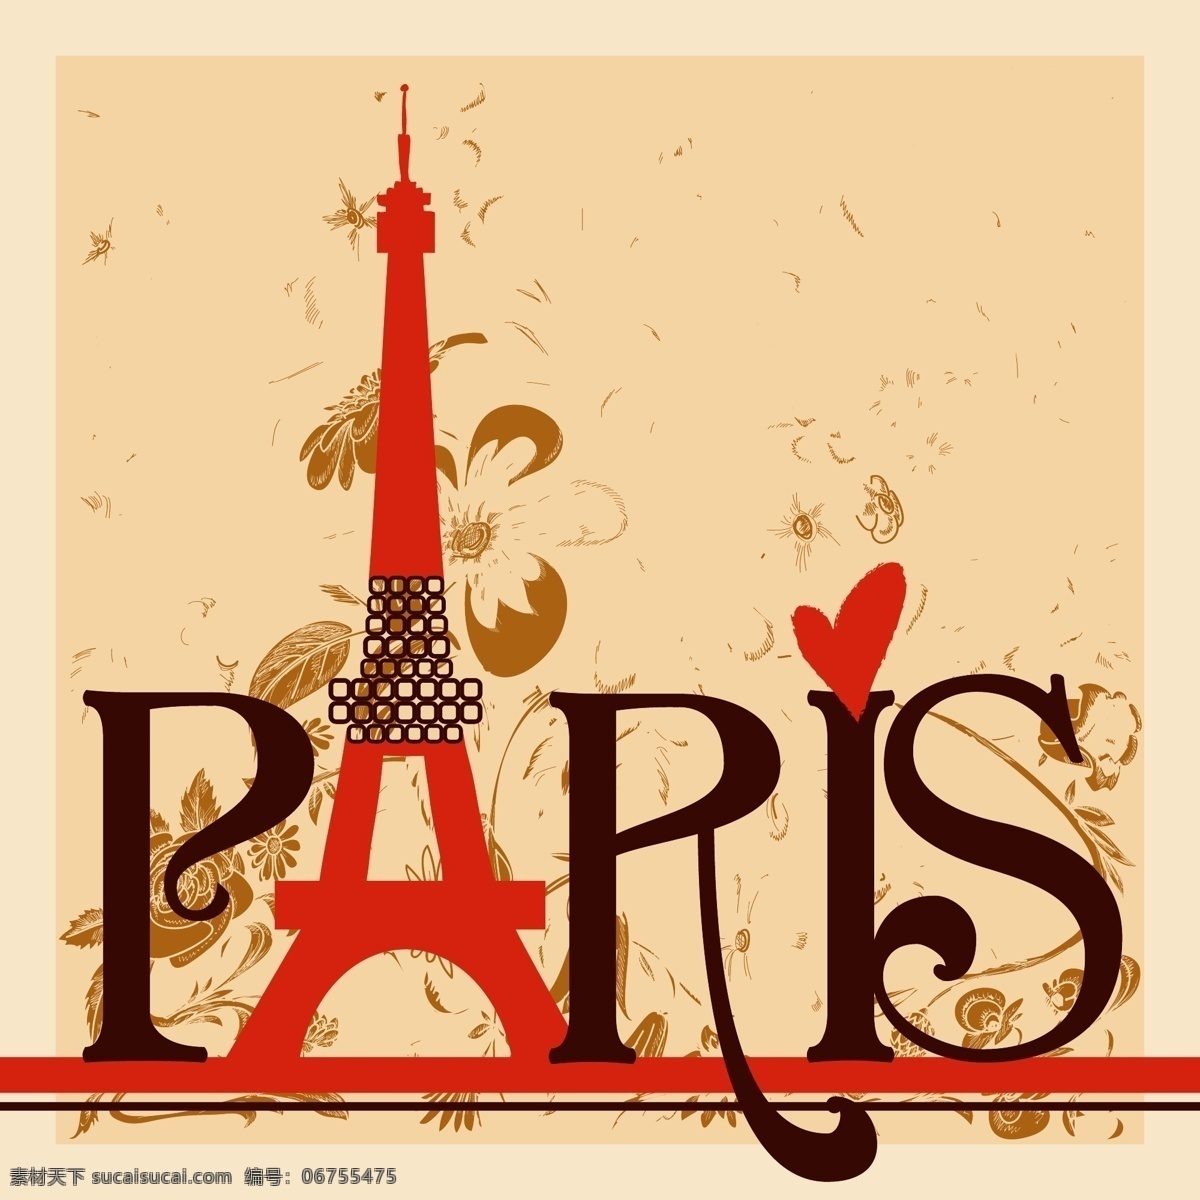 埃菲尔铁塔 法国 巴黎 铁塔 线描 抽象 欧洲 古典 经典 花纹 印花 绣花 t恤 服装 时尚 潮牌 对称 国潮 矢量图